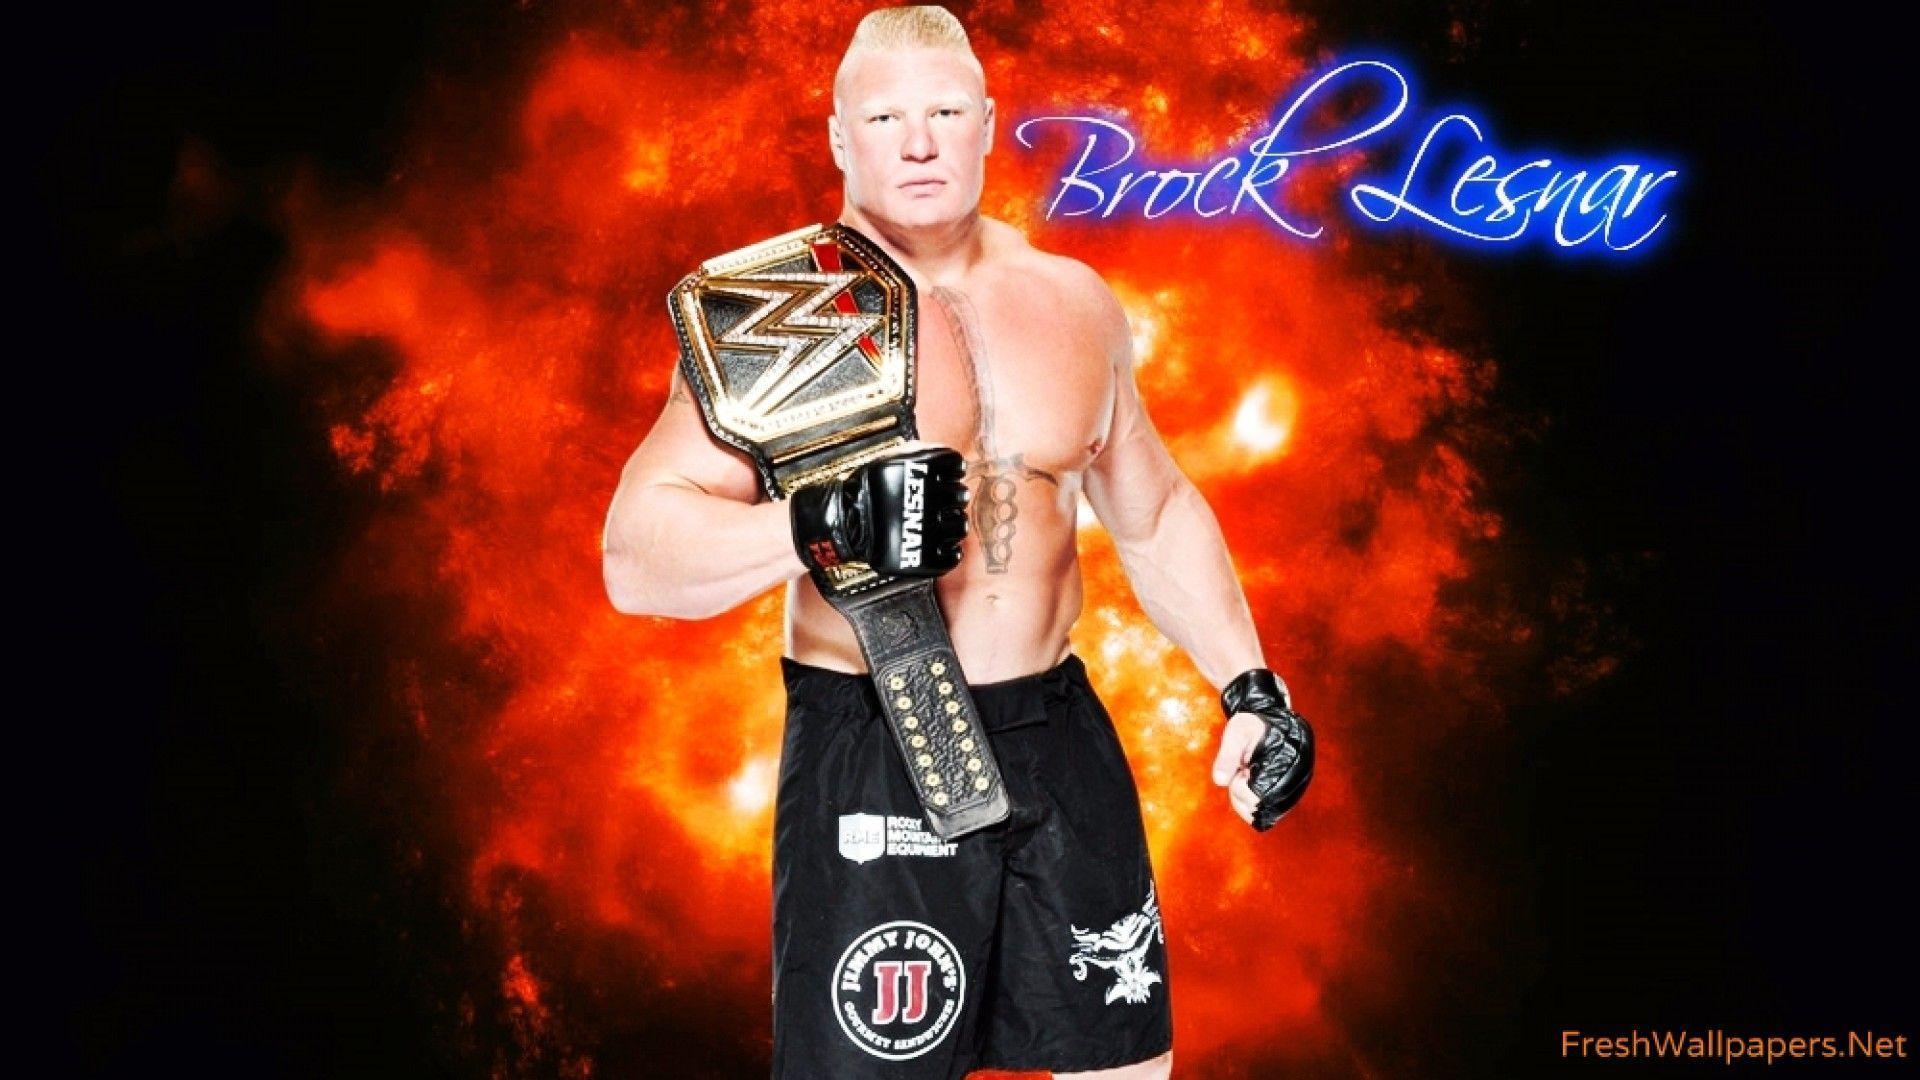 The 14 best Brock Lesnar HD Image image. Brock